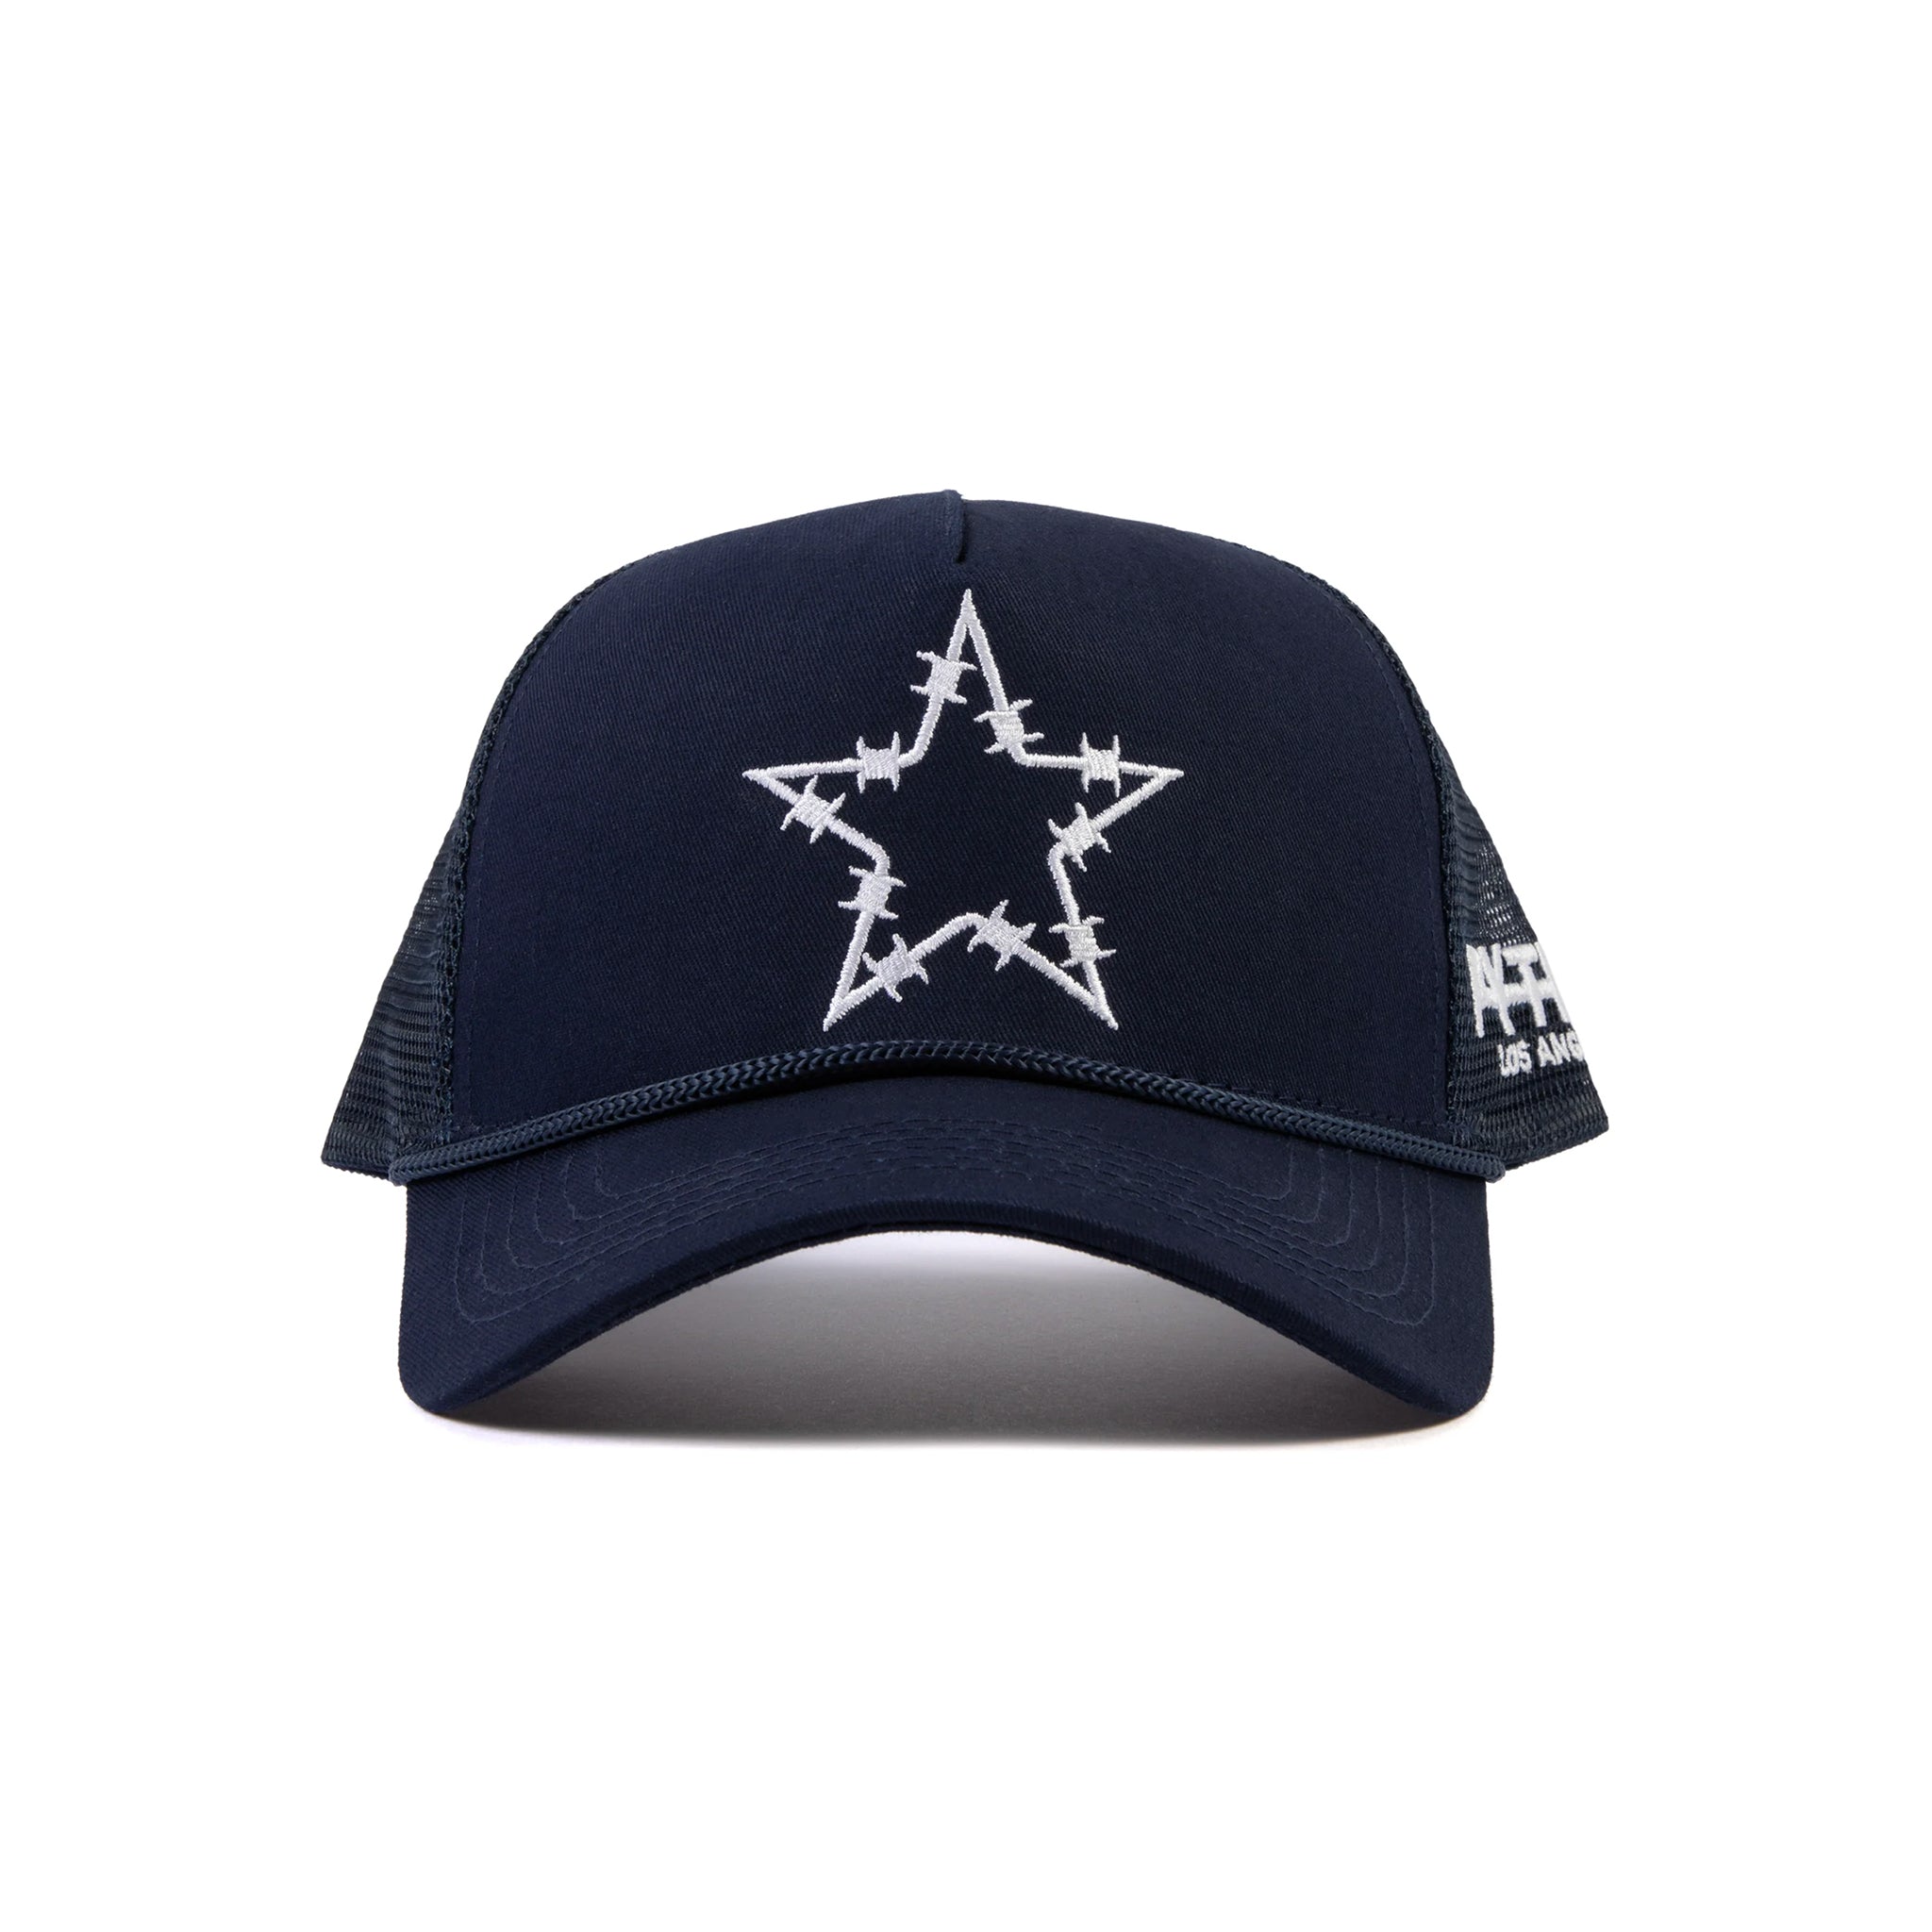 Pythia Barbwire Star Trucker Navy Hat